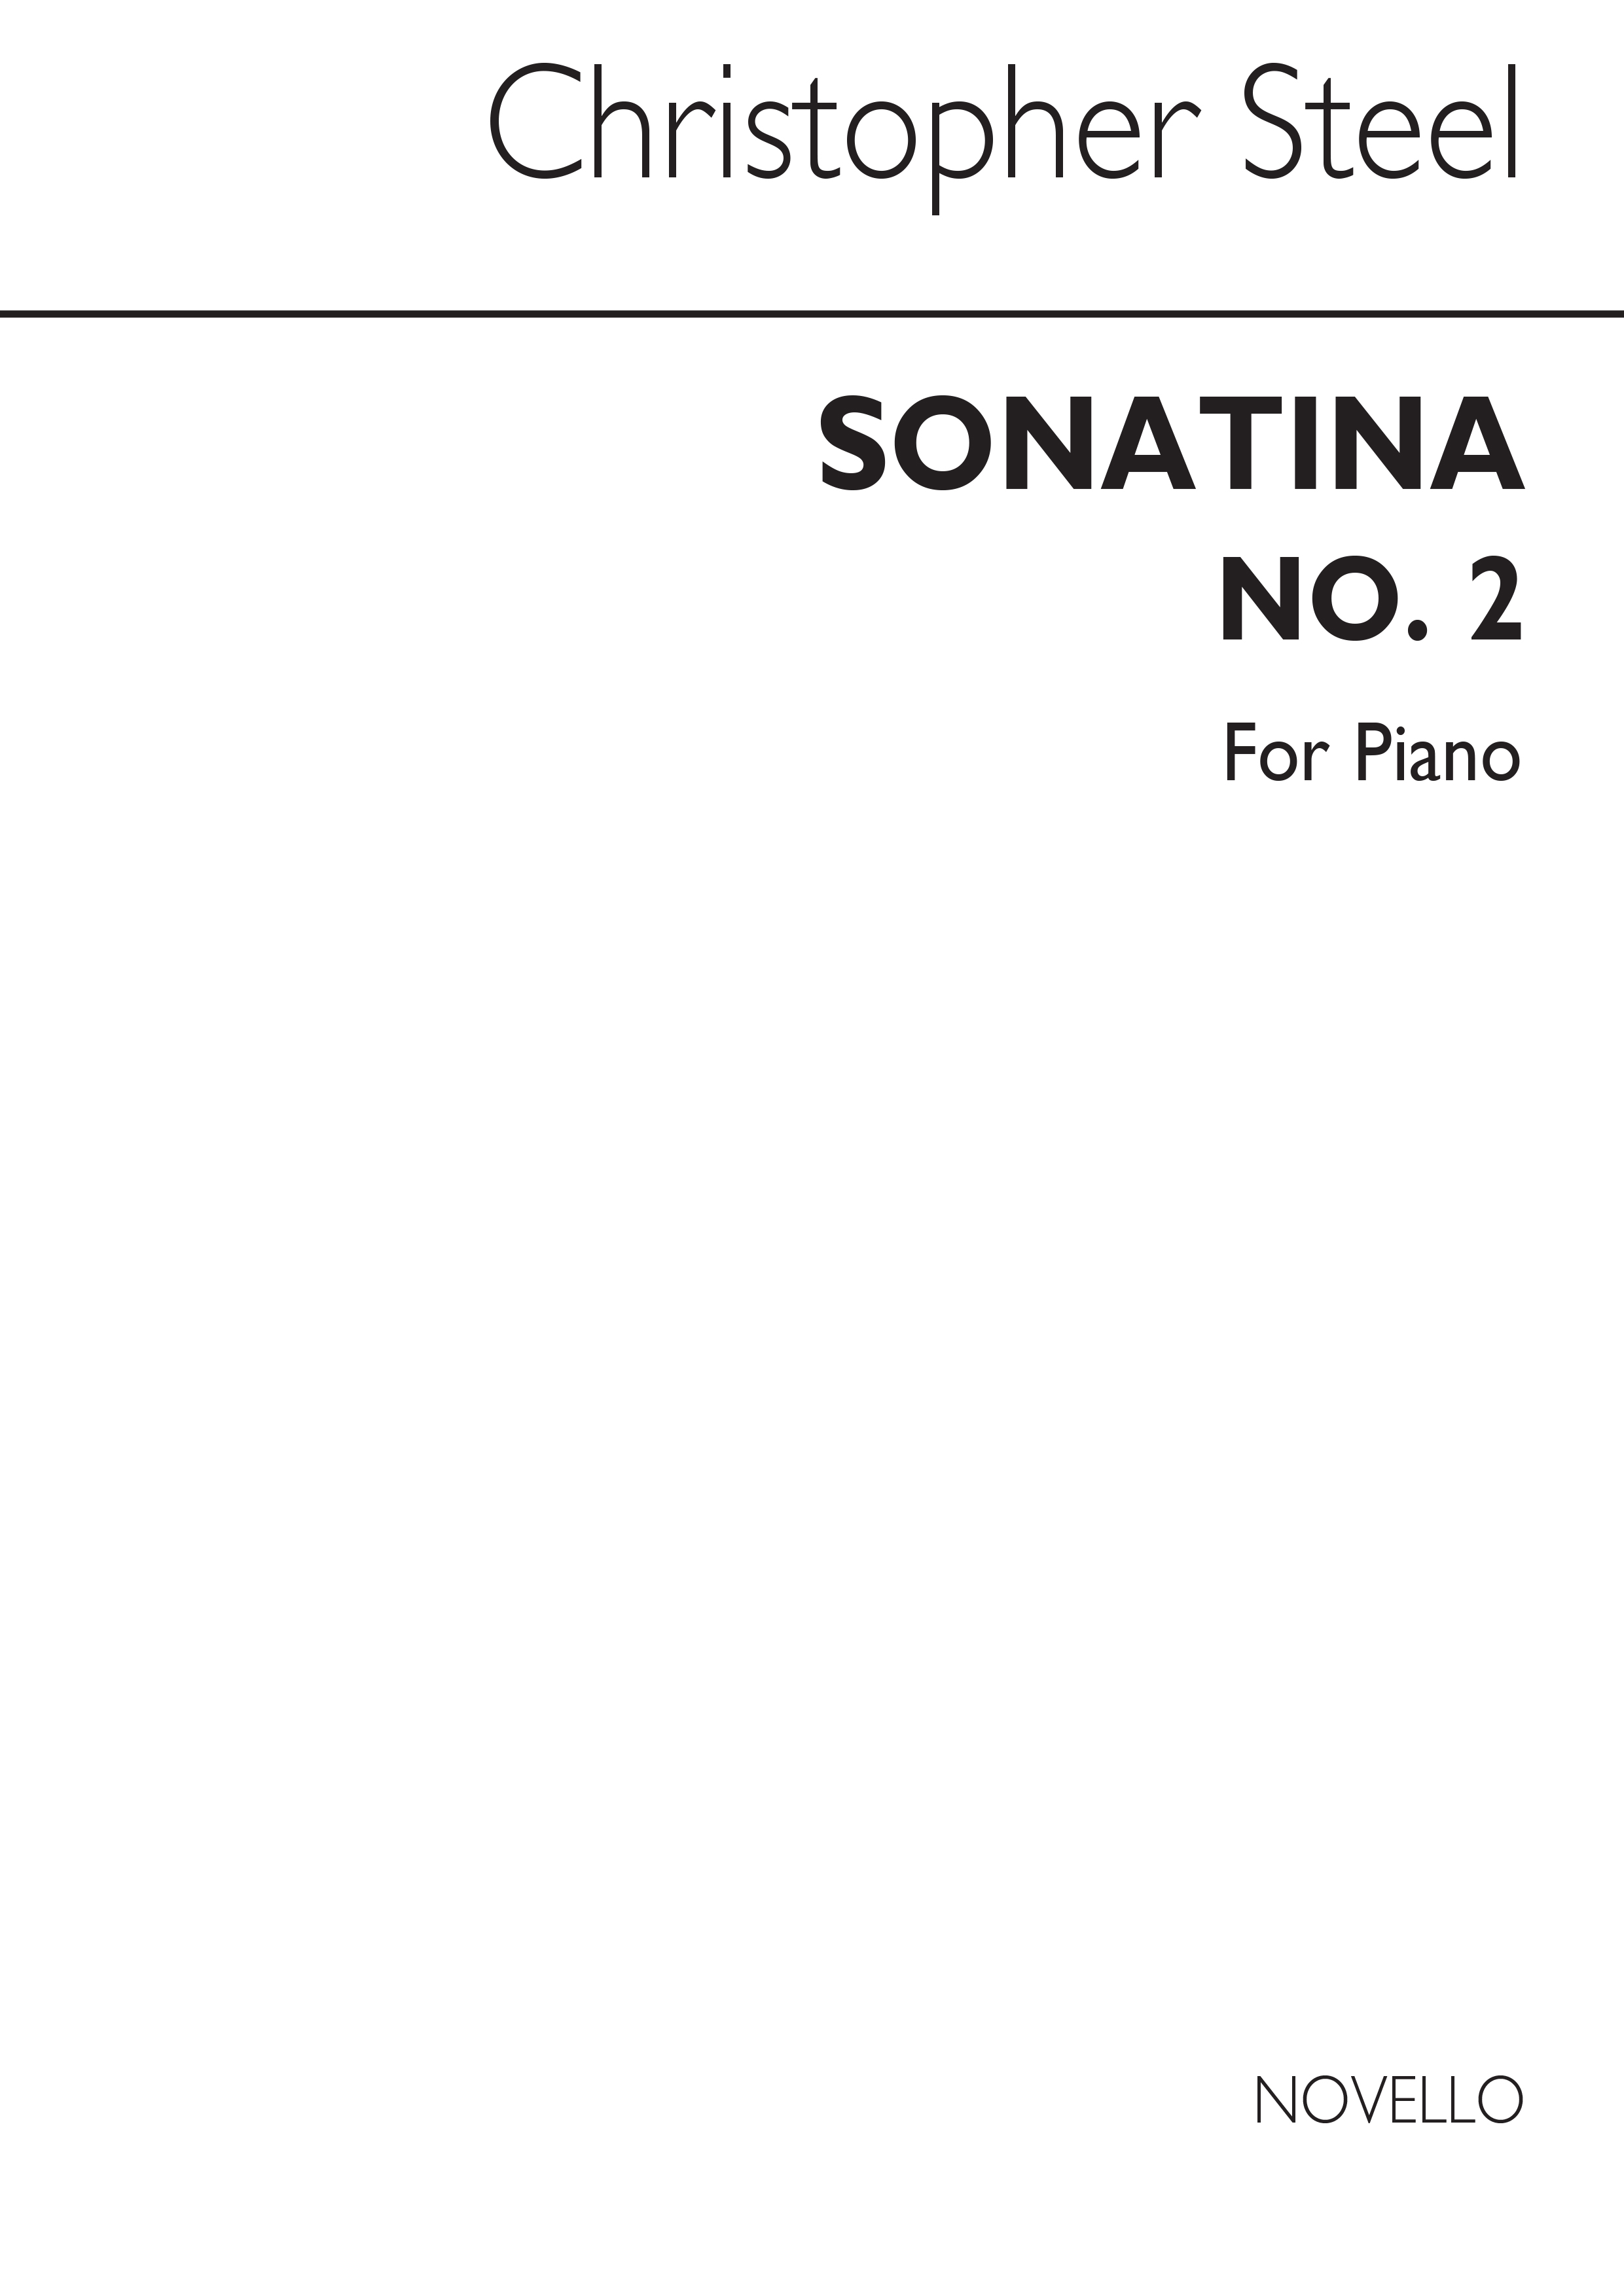 Sonatina No.2 for Piano